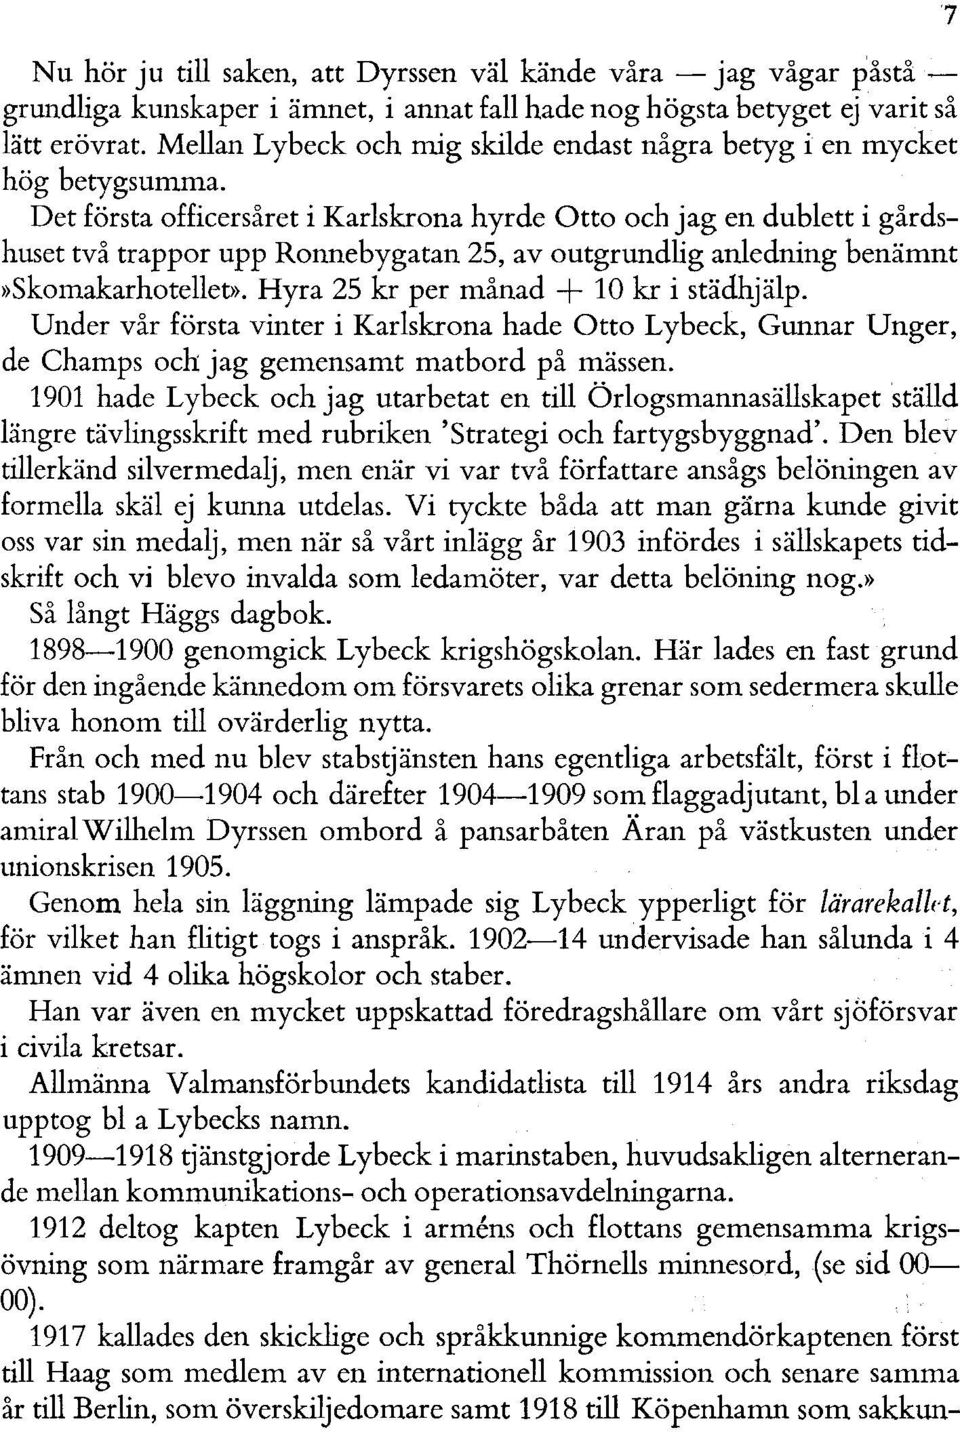 Det första officersåret i Karlskrona hyrde Otto och jag en dublett i gårdshuset två trappor upp Ronnebygatan 25, av outgrundlig anledning benämnt»skomakarhotellet».